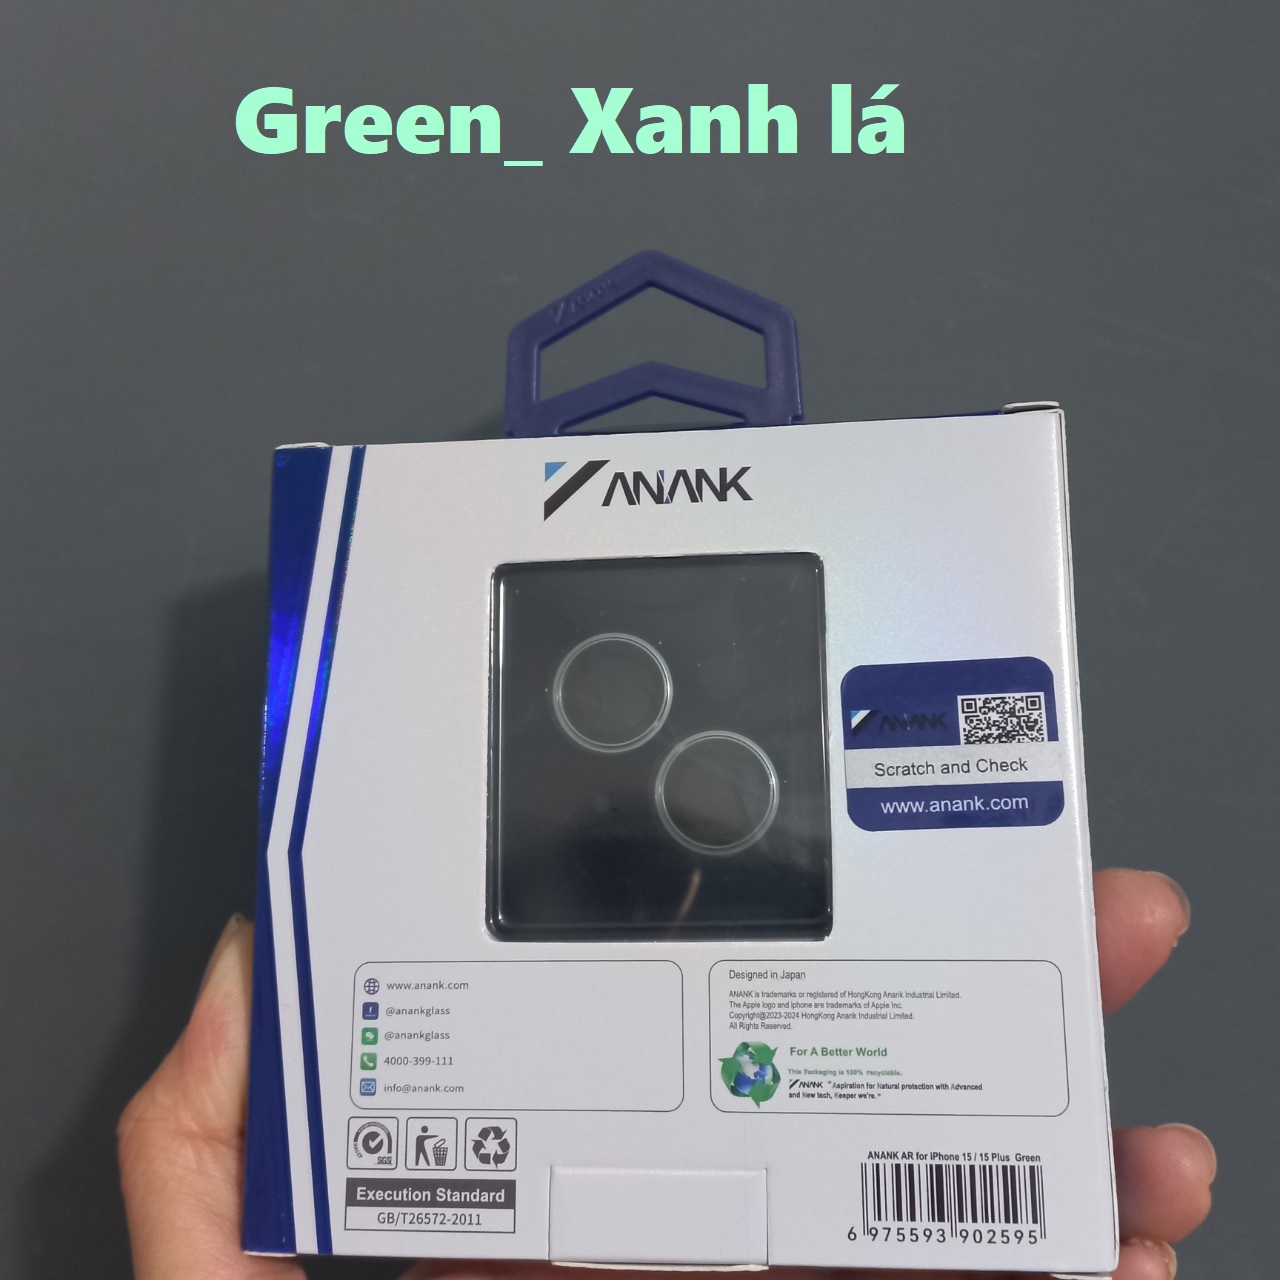 Mắt dán bảo vệ camera cao cấp Anank cho iP 15 15Plus đủ màu _ Hàng chính hãng